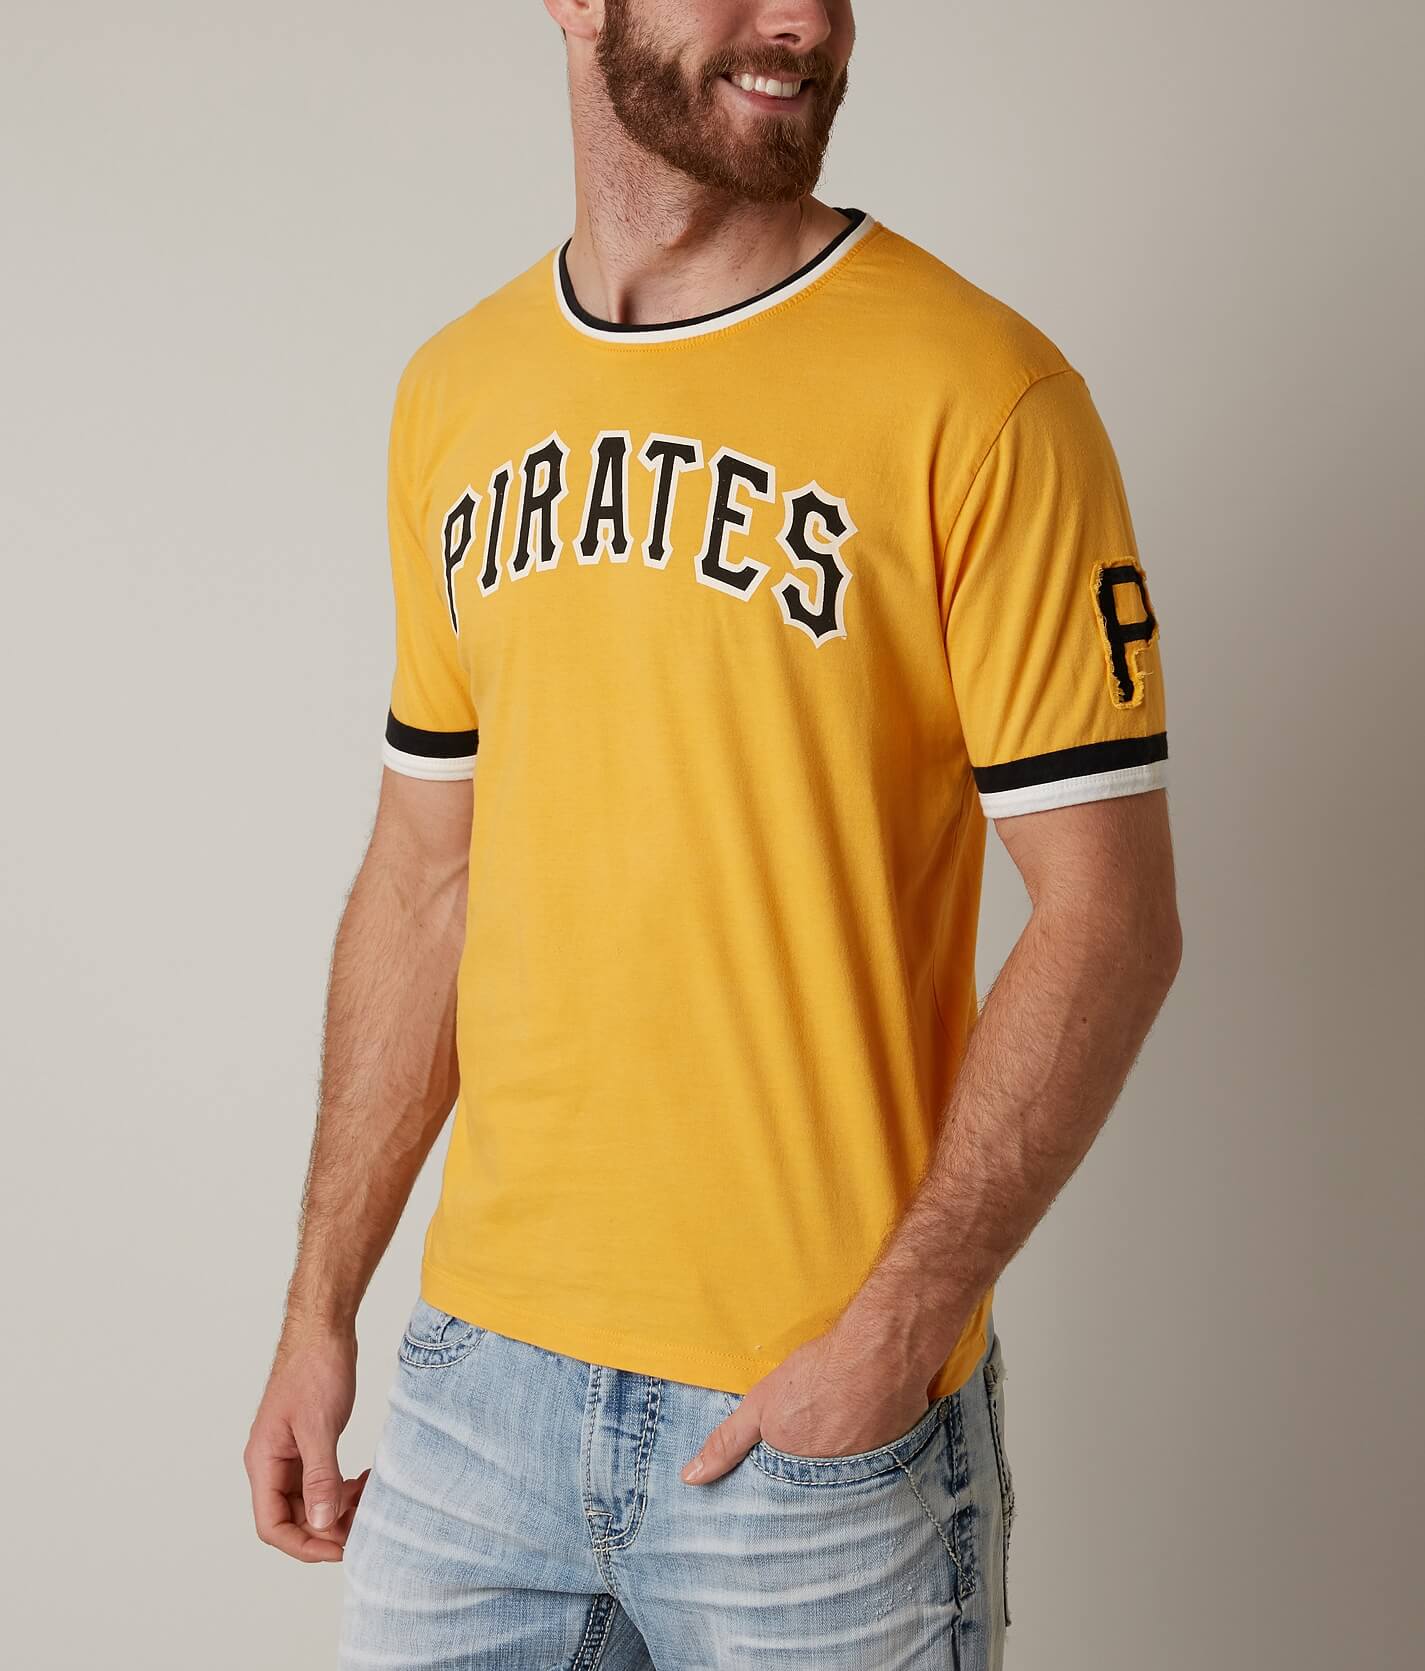 pittsburgh pirates shirt men